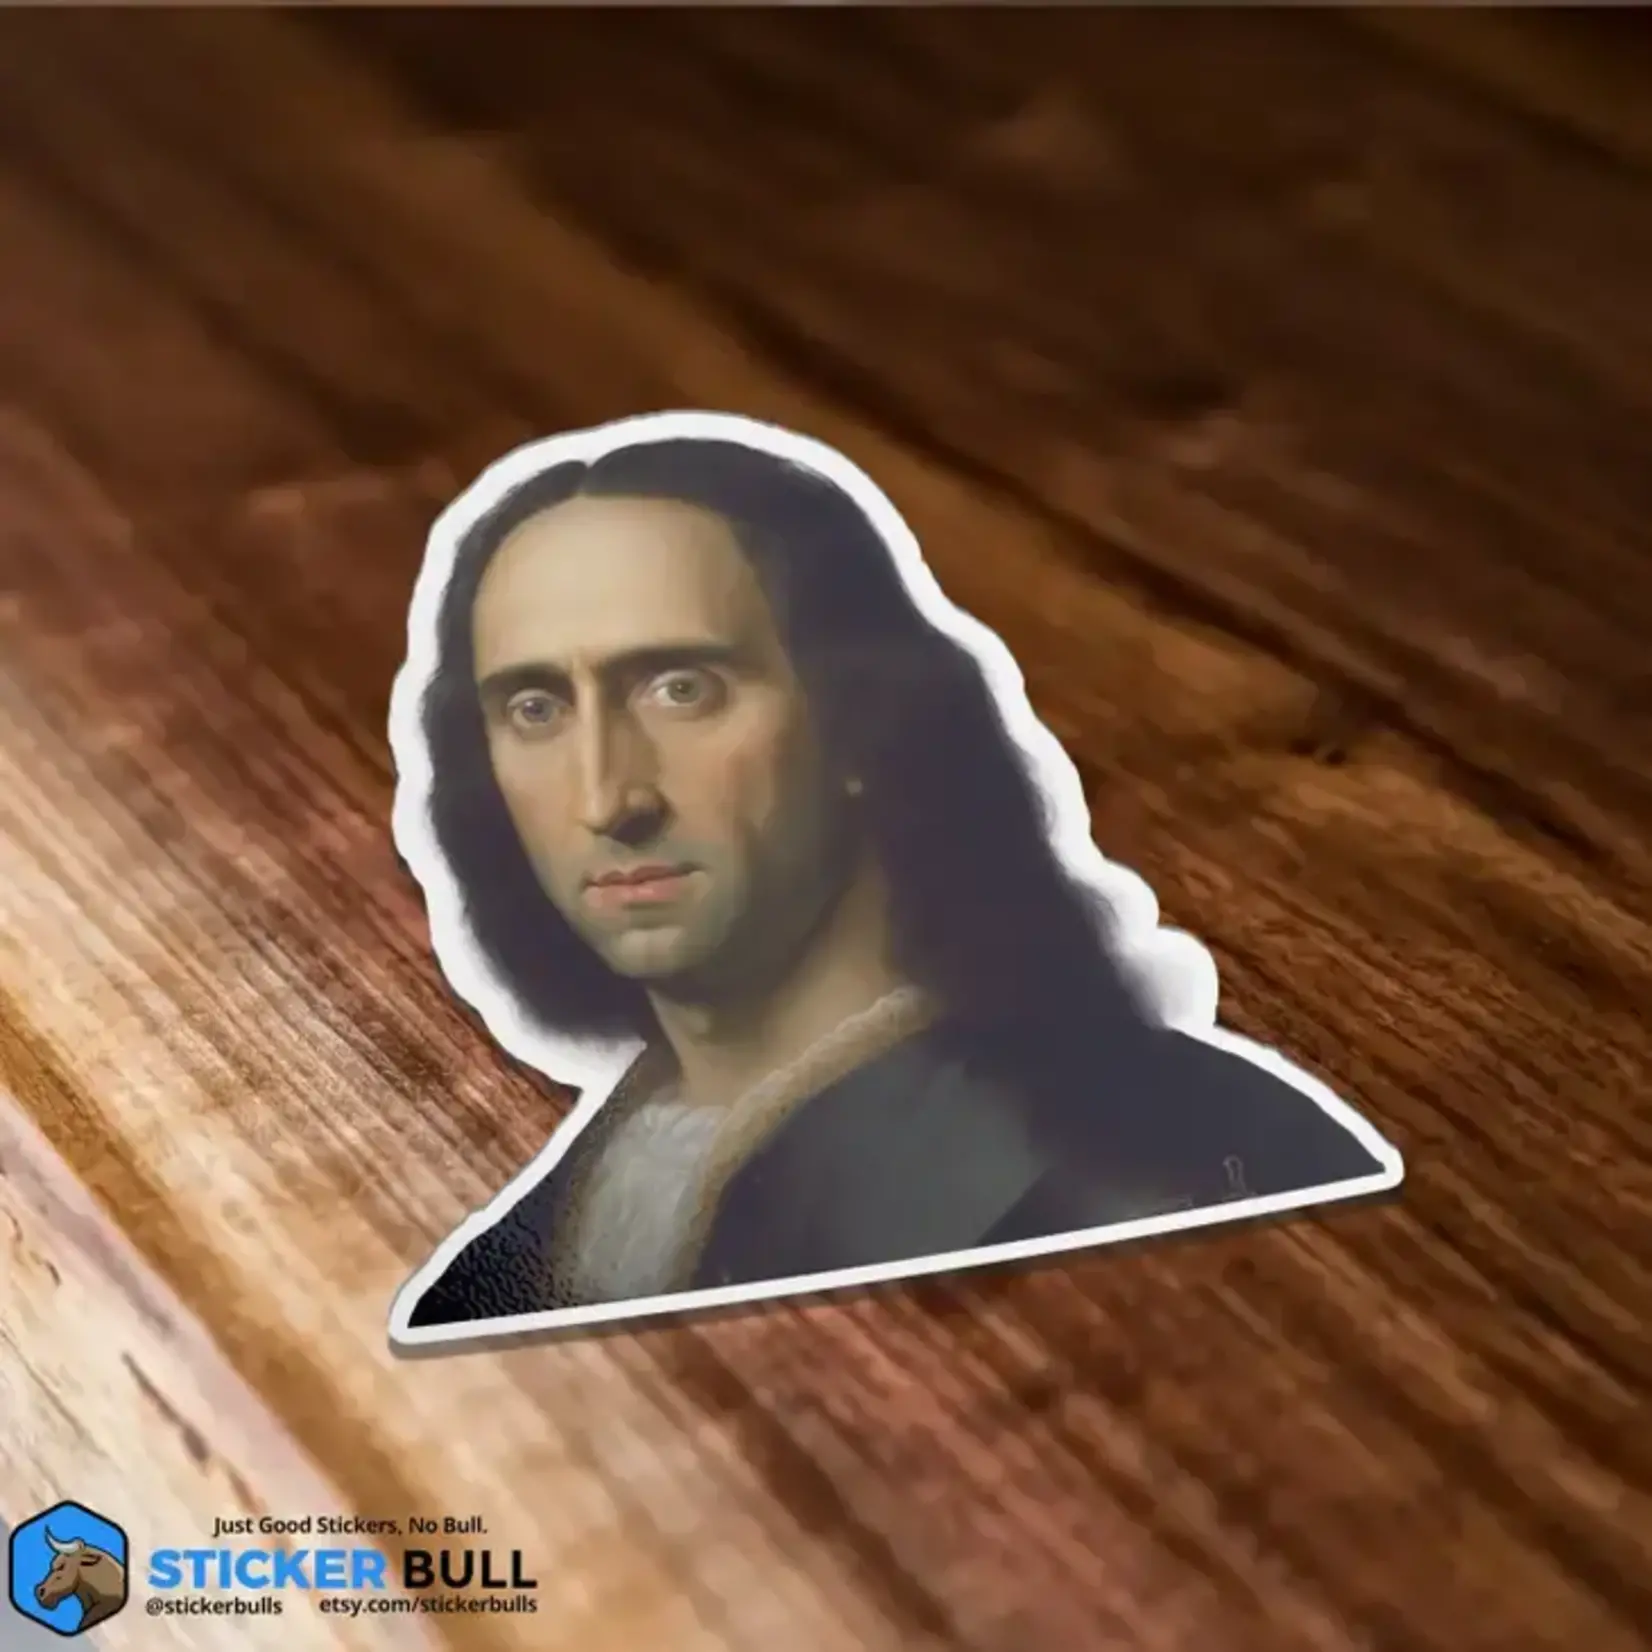 Sticker Bull Mona Lisa Nicolas Cage "Mona Cage" Meme Sticker